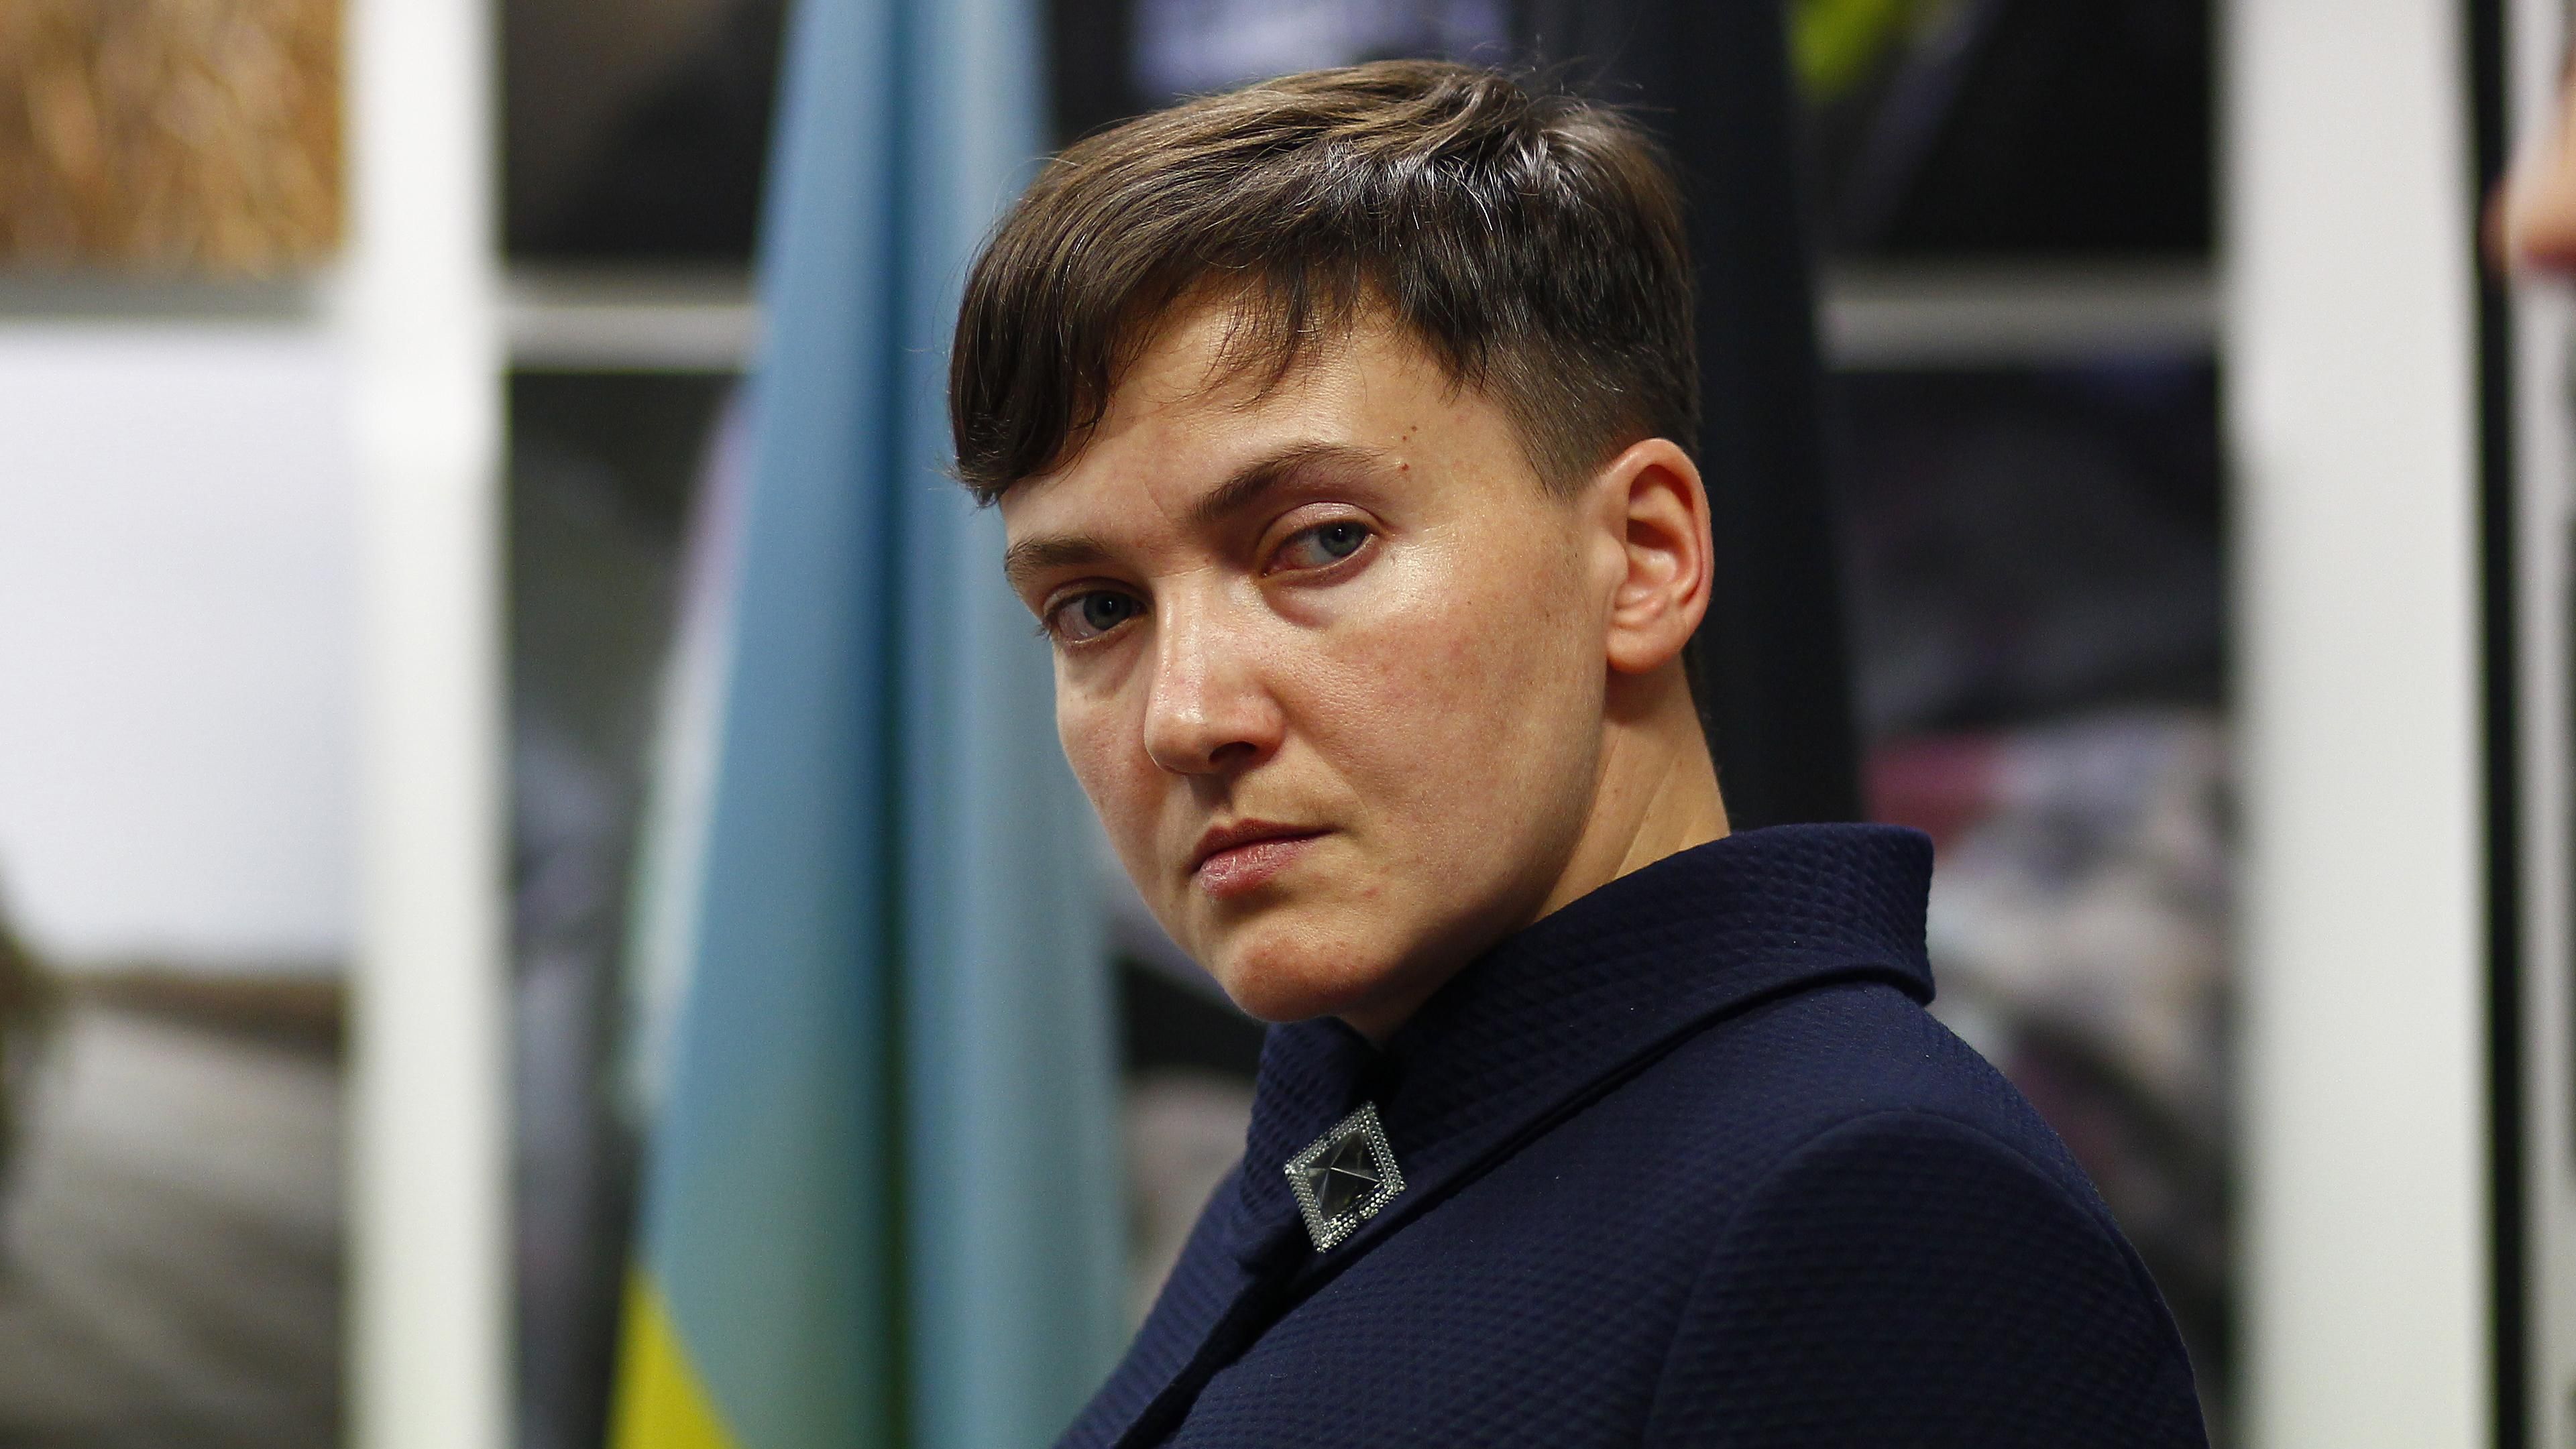 Пусть меня судит суд Господень, – Савченко отметилась очередной выходкой в суде